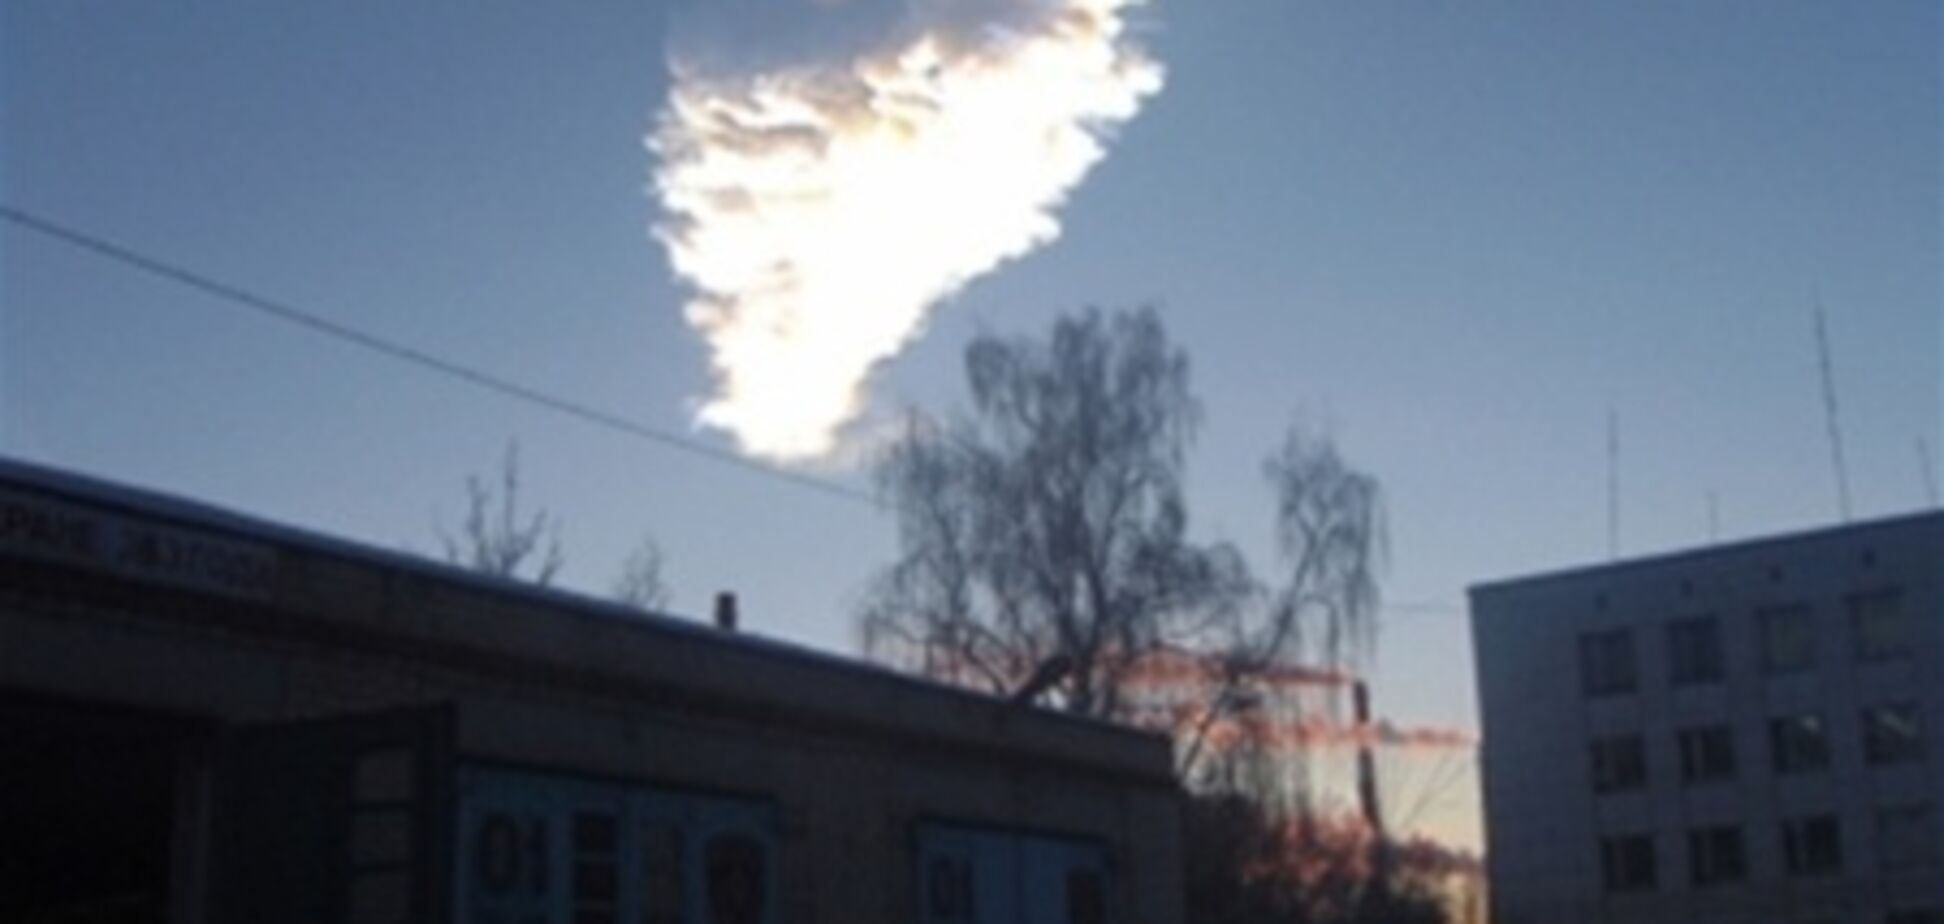 МЧС России не обнаружило серьезных разрушений в Челябинске. Видео